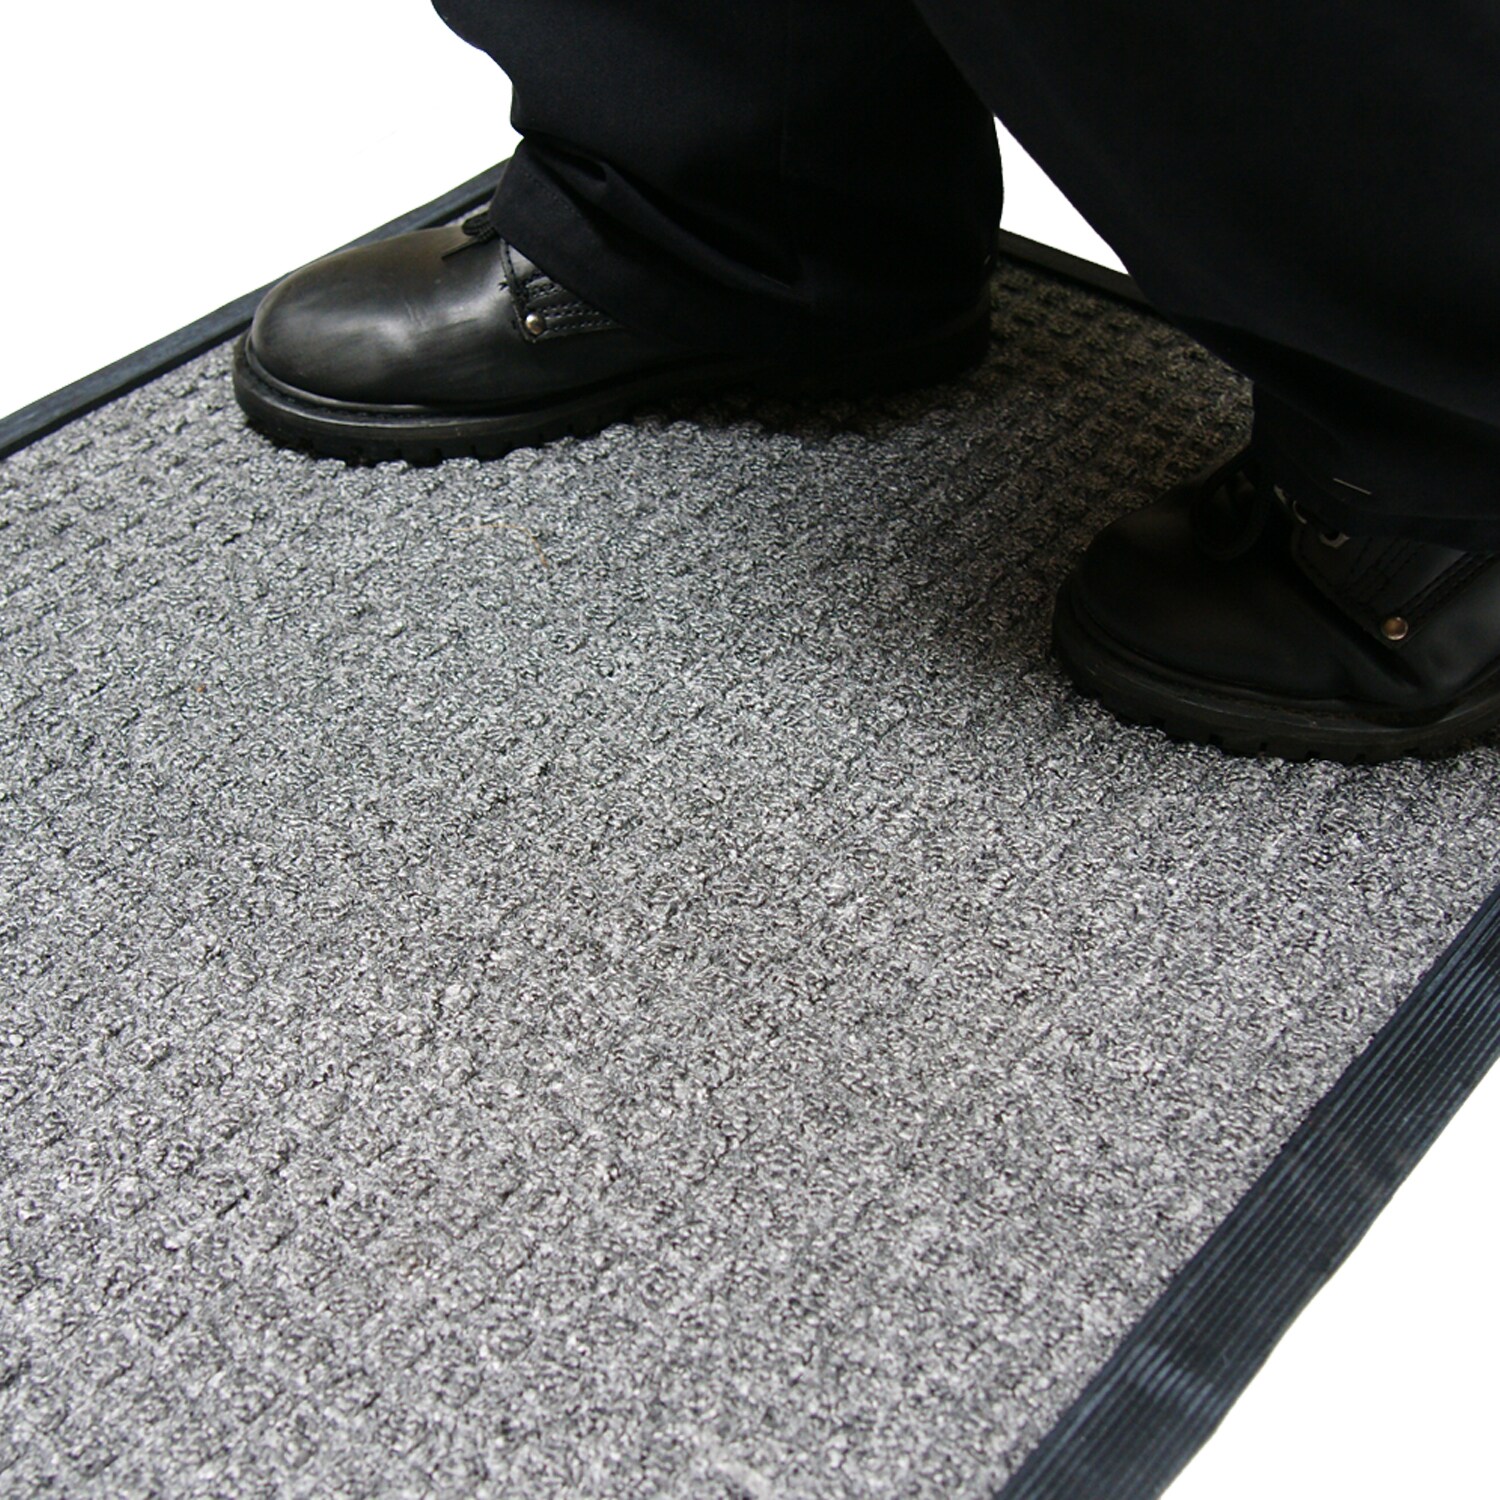 Rubber Backed Carpet In Door & Floor Mats for sale